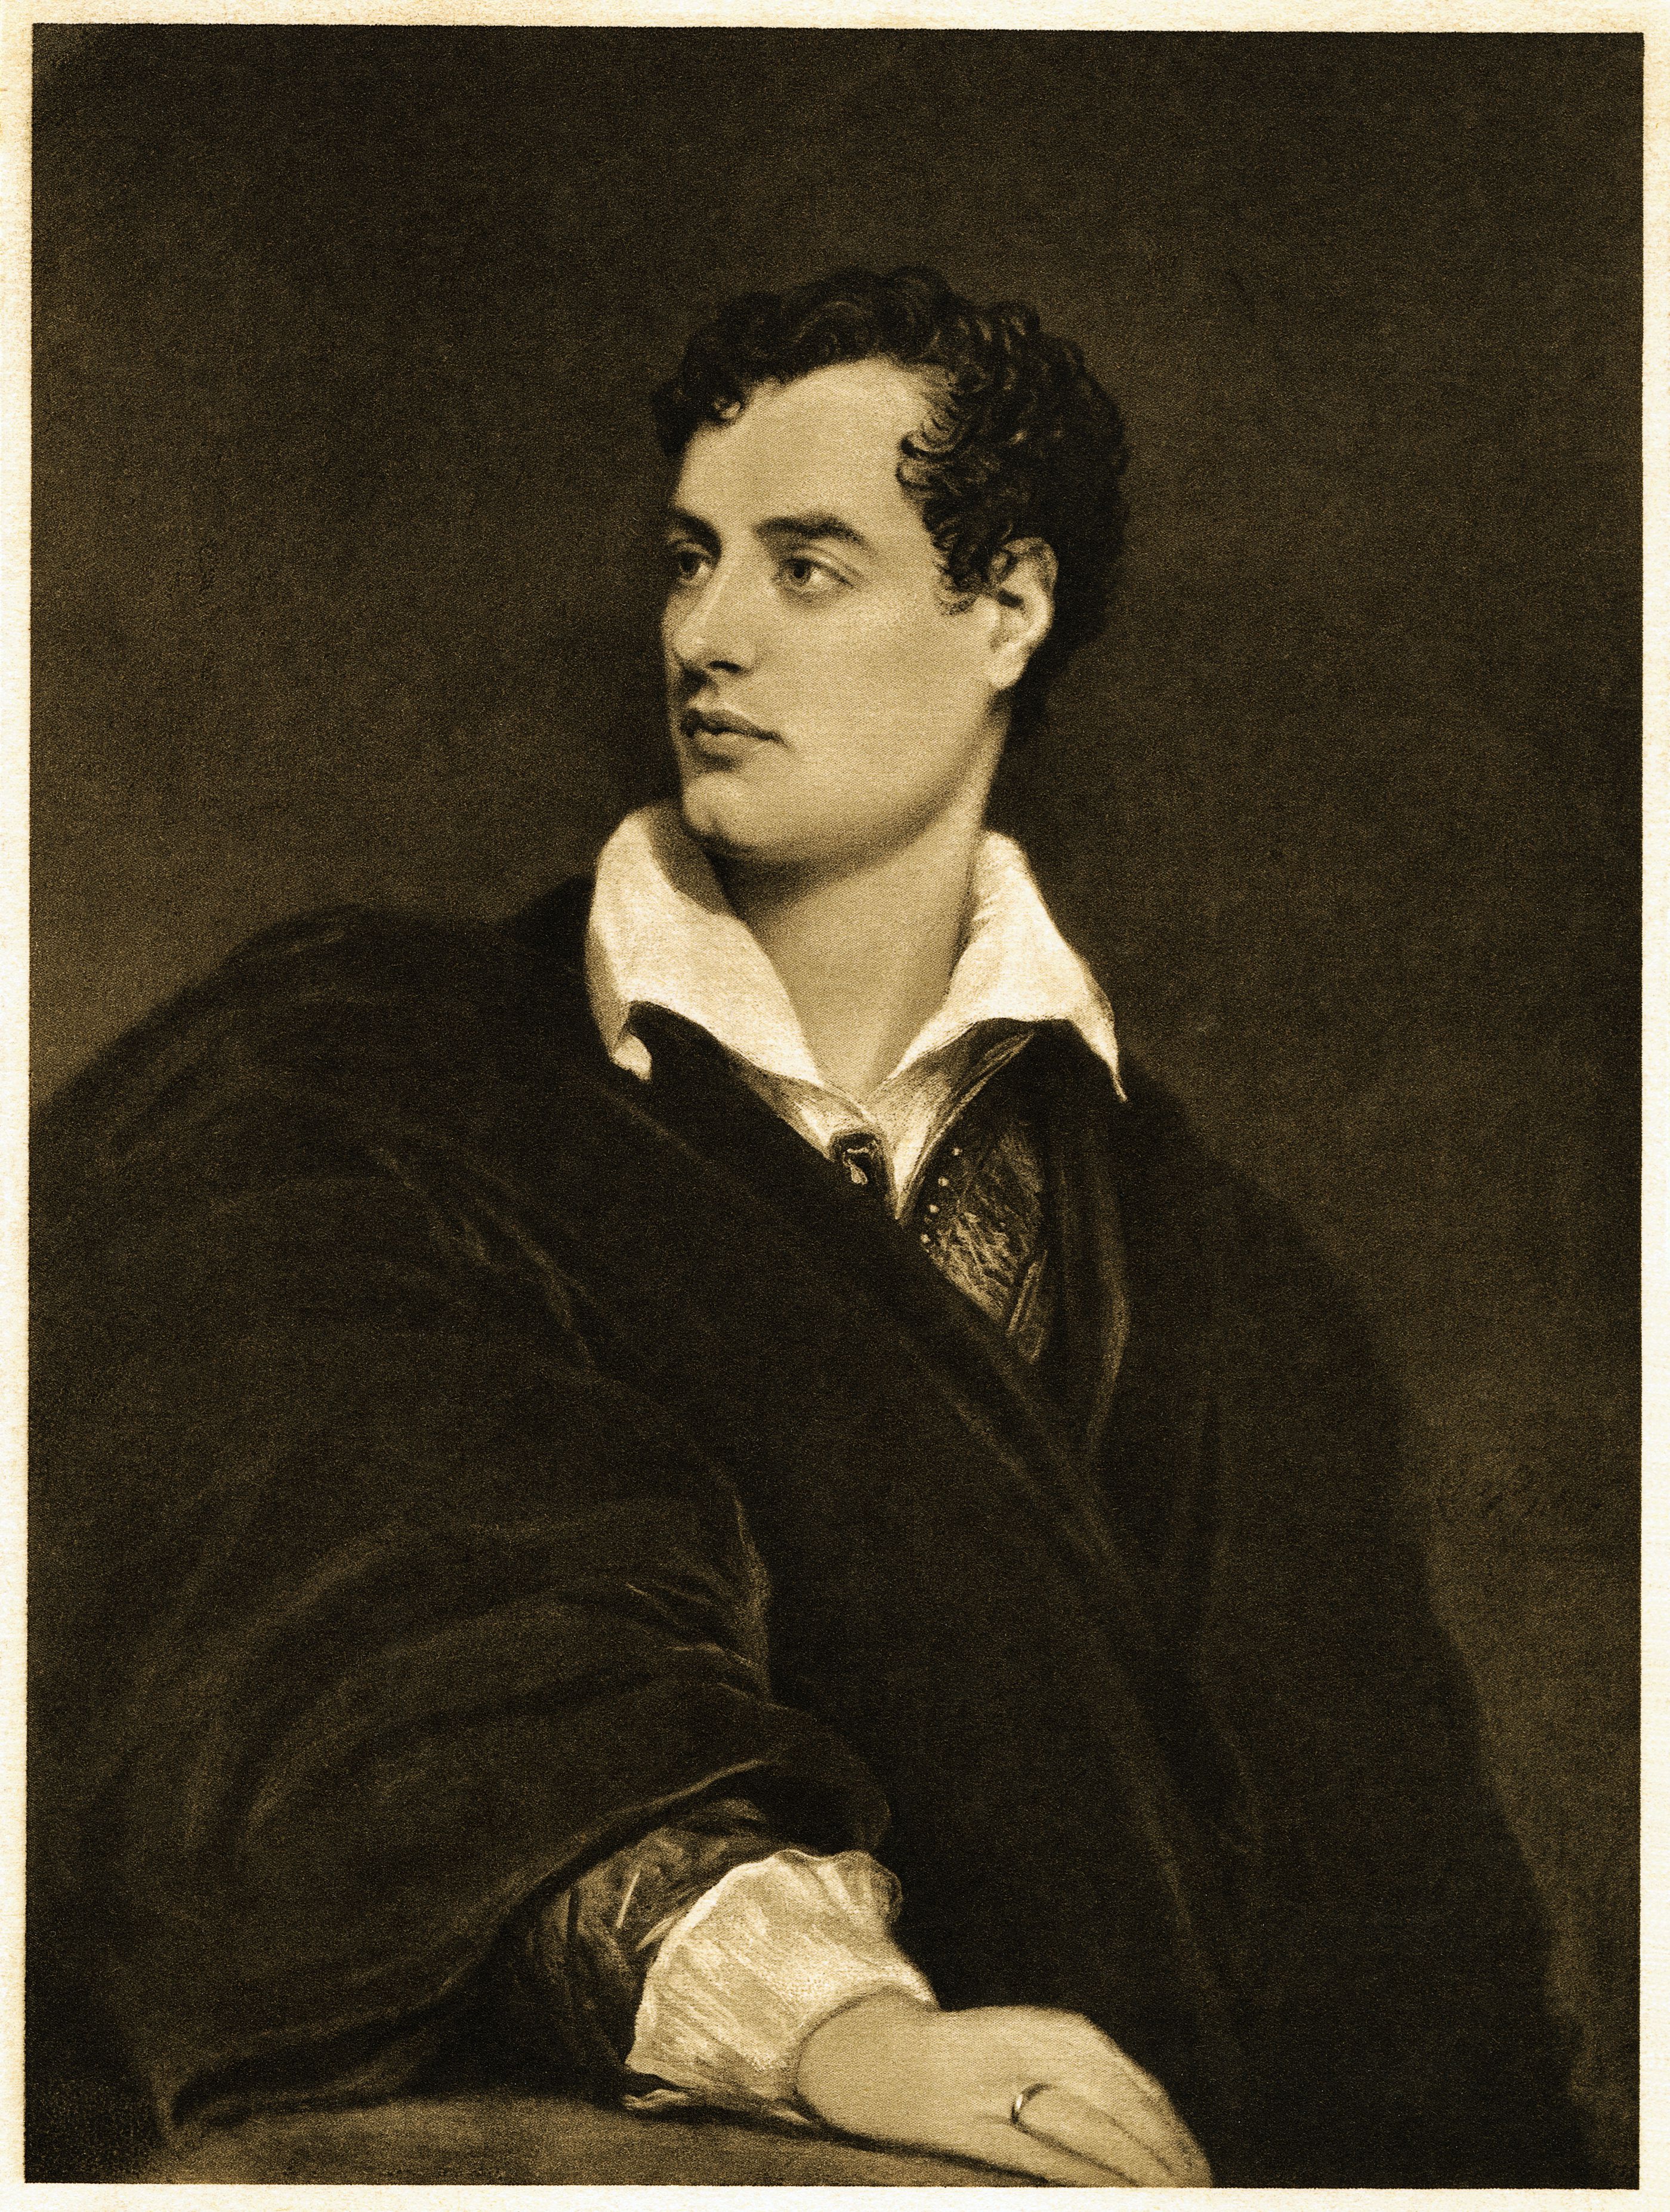 Retratro de Lord Byron basado en la pintura original de Thomas Phillips.